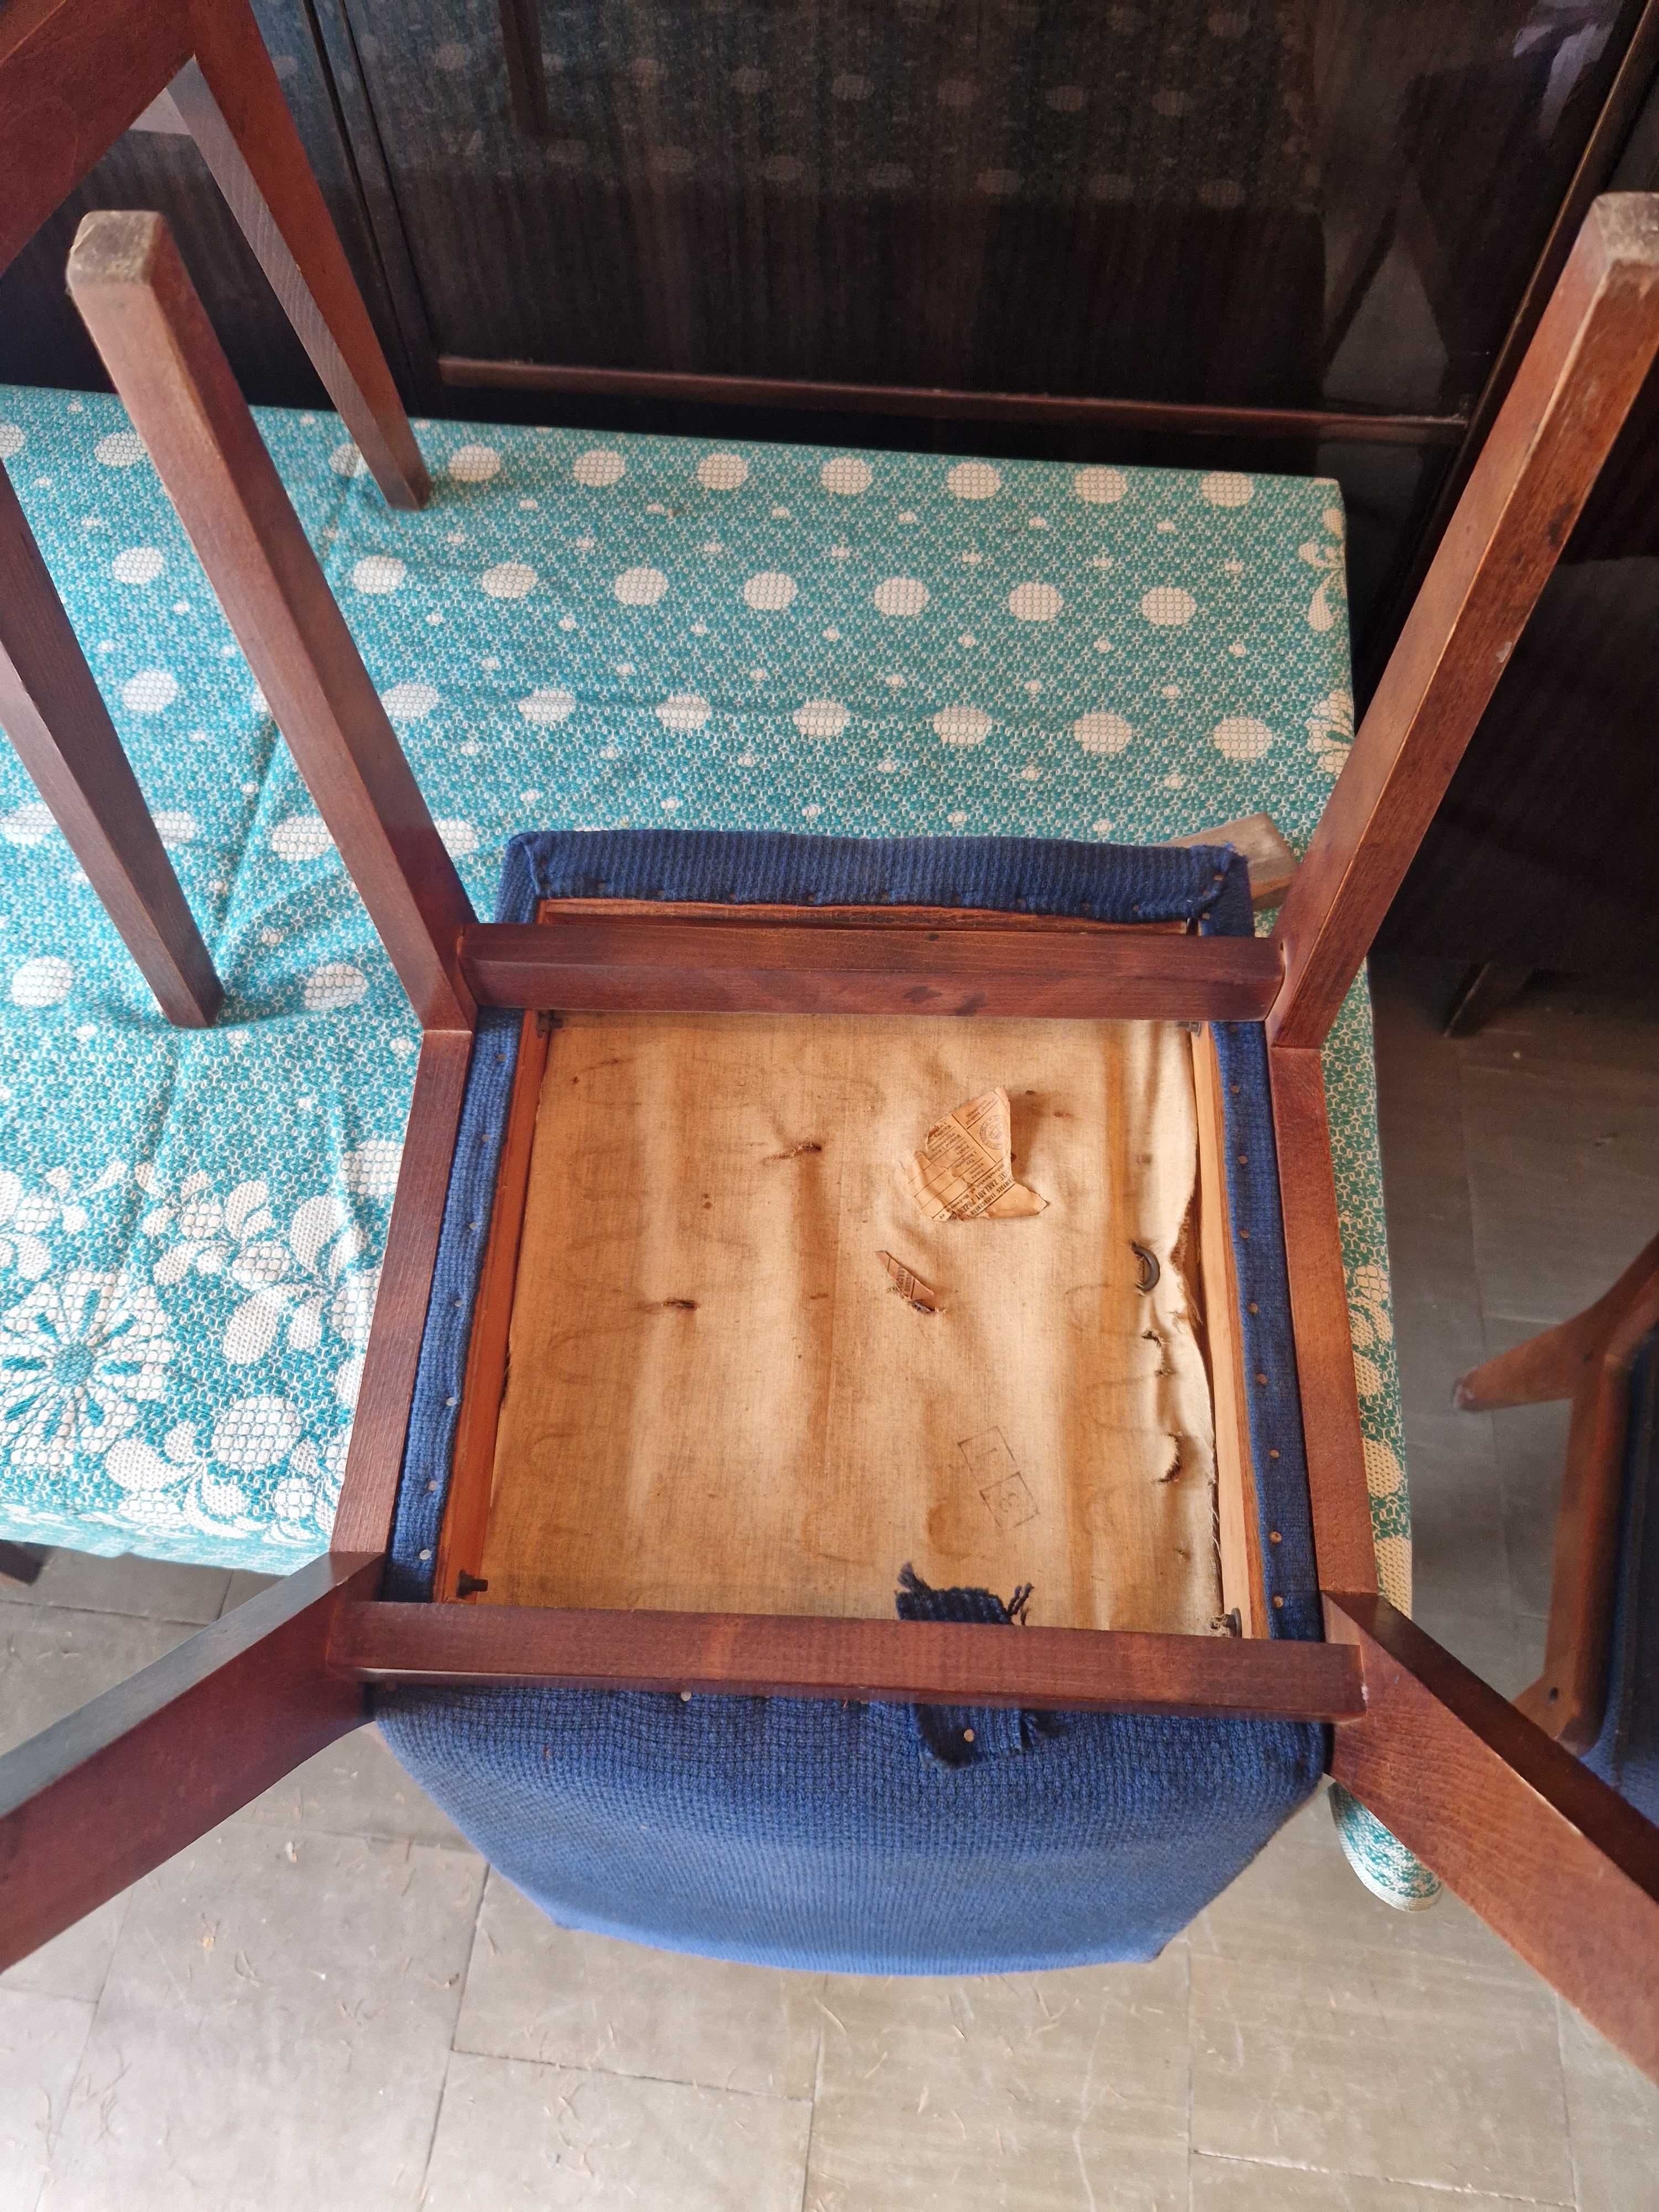 Krzesła drewniane PRL